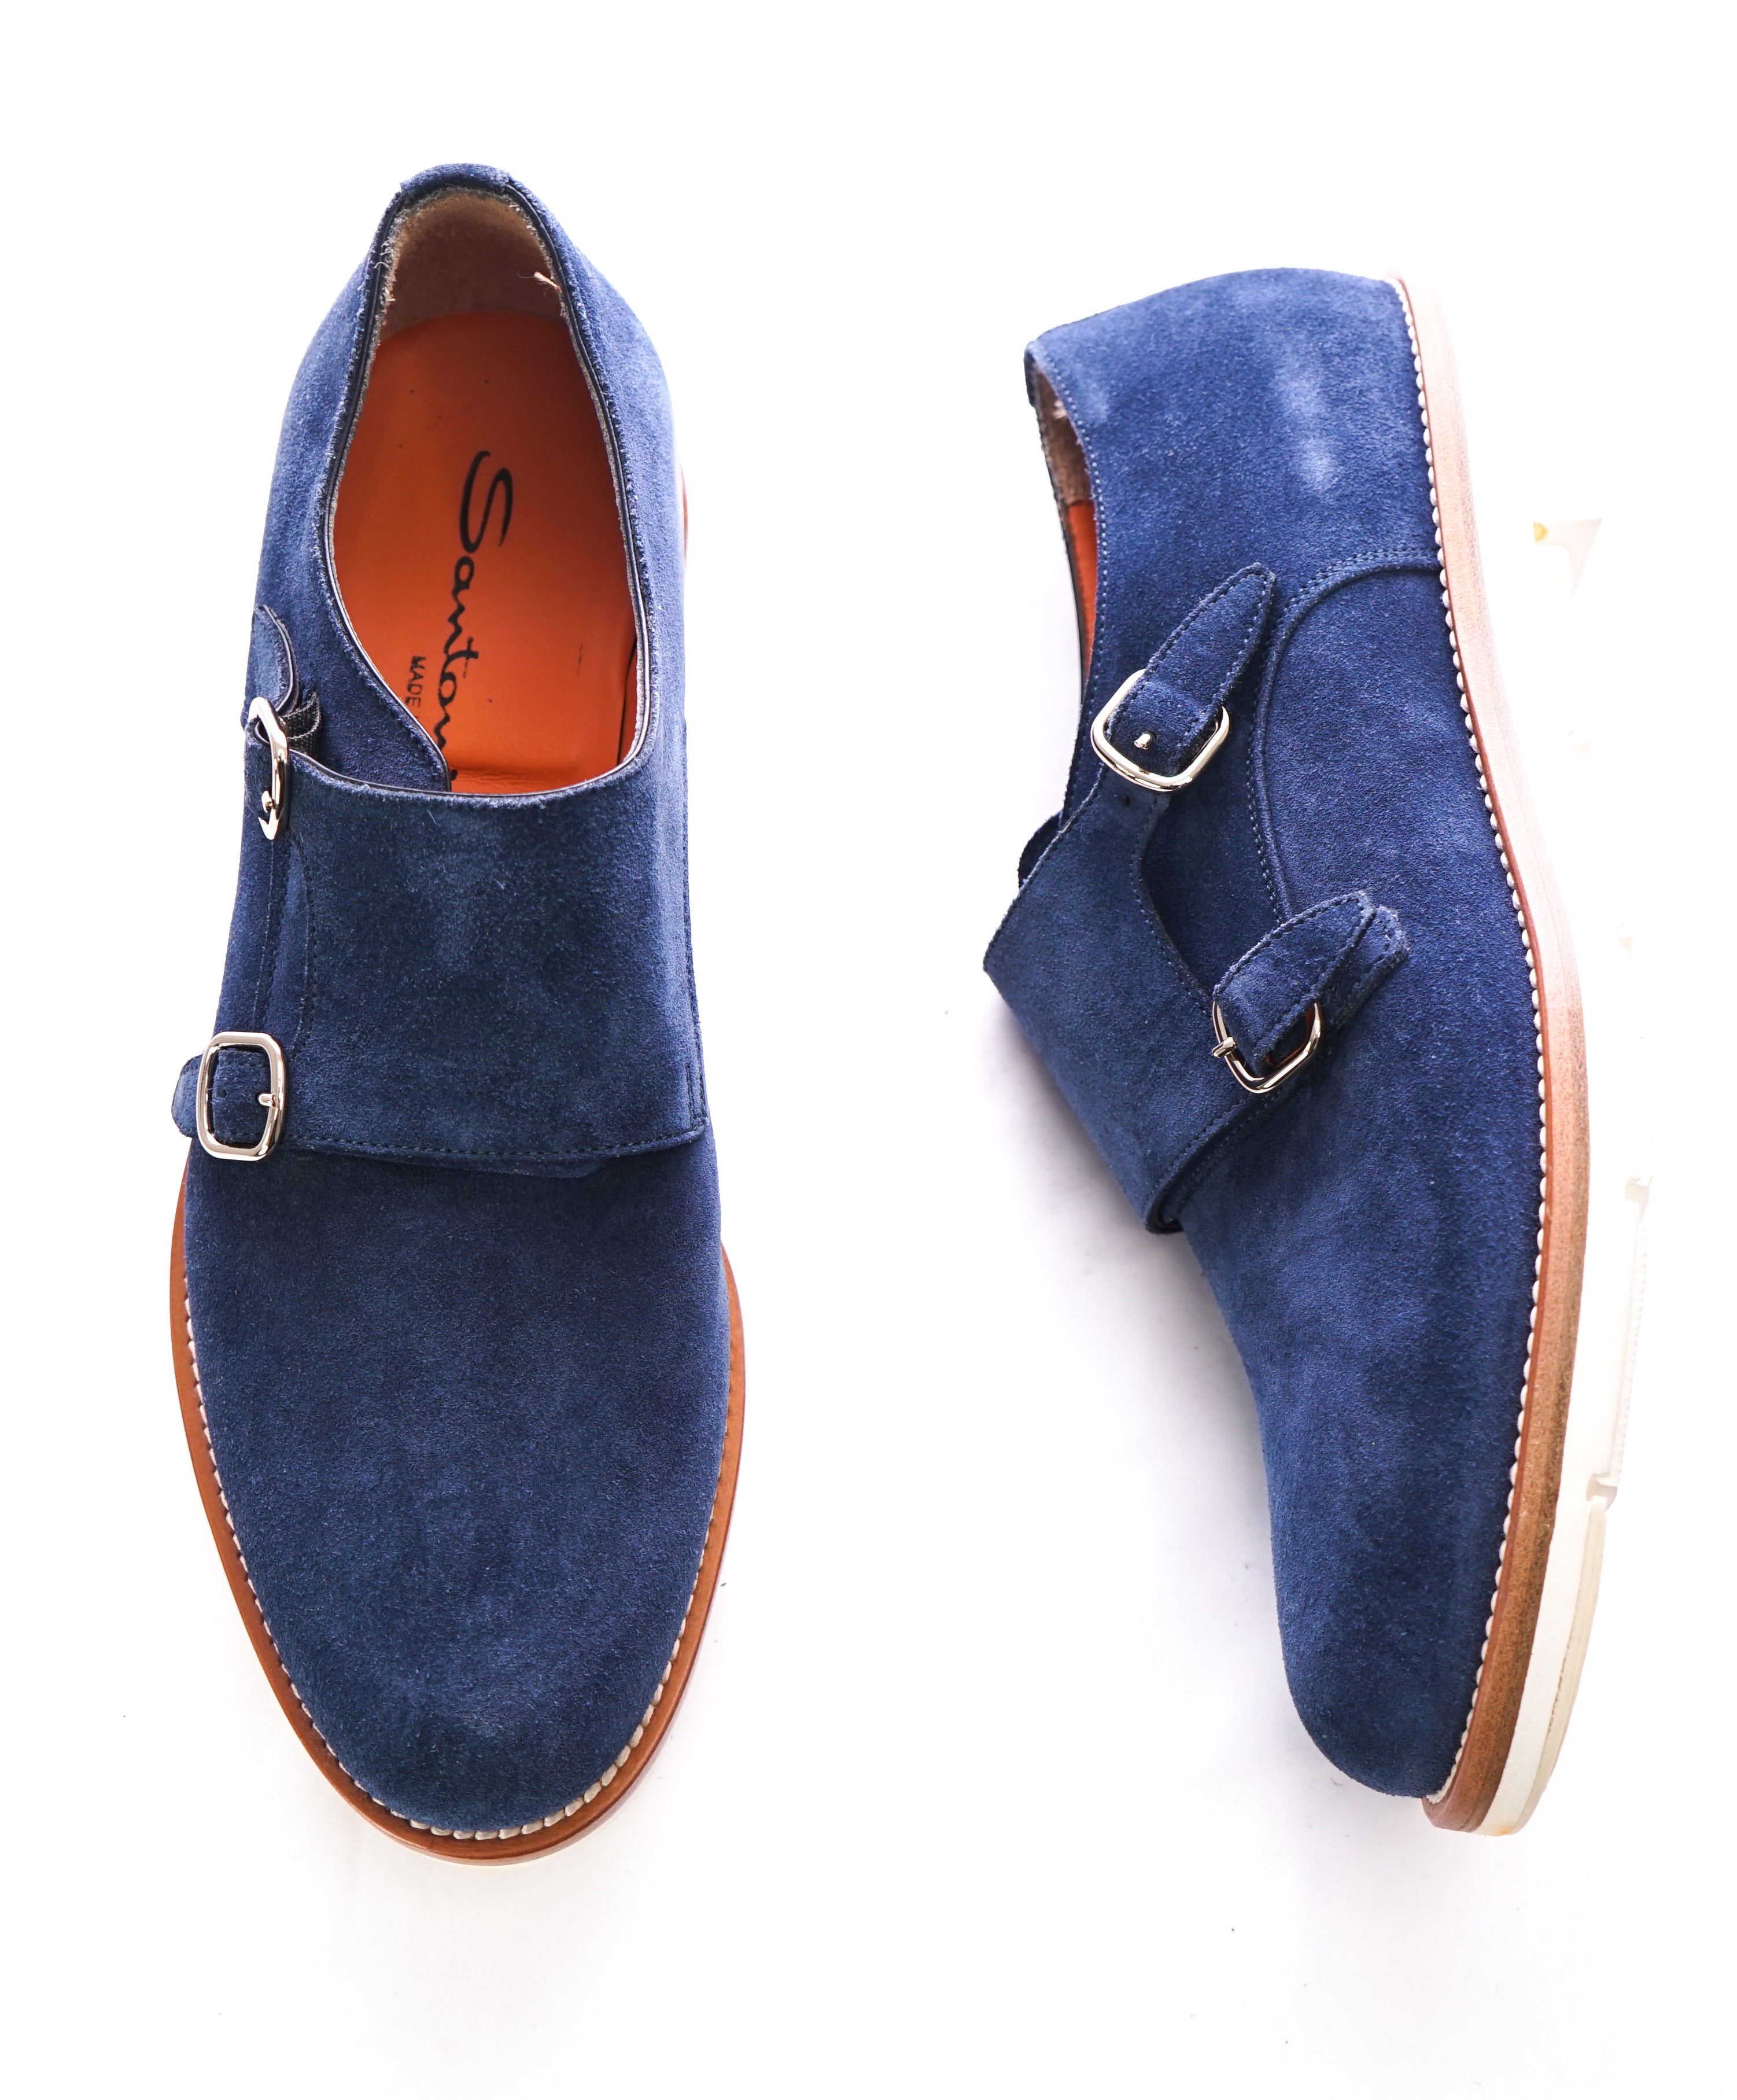 blue suede monk strap shoes